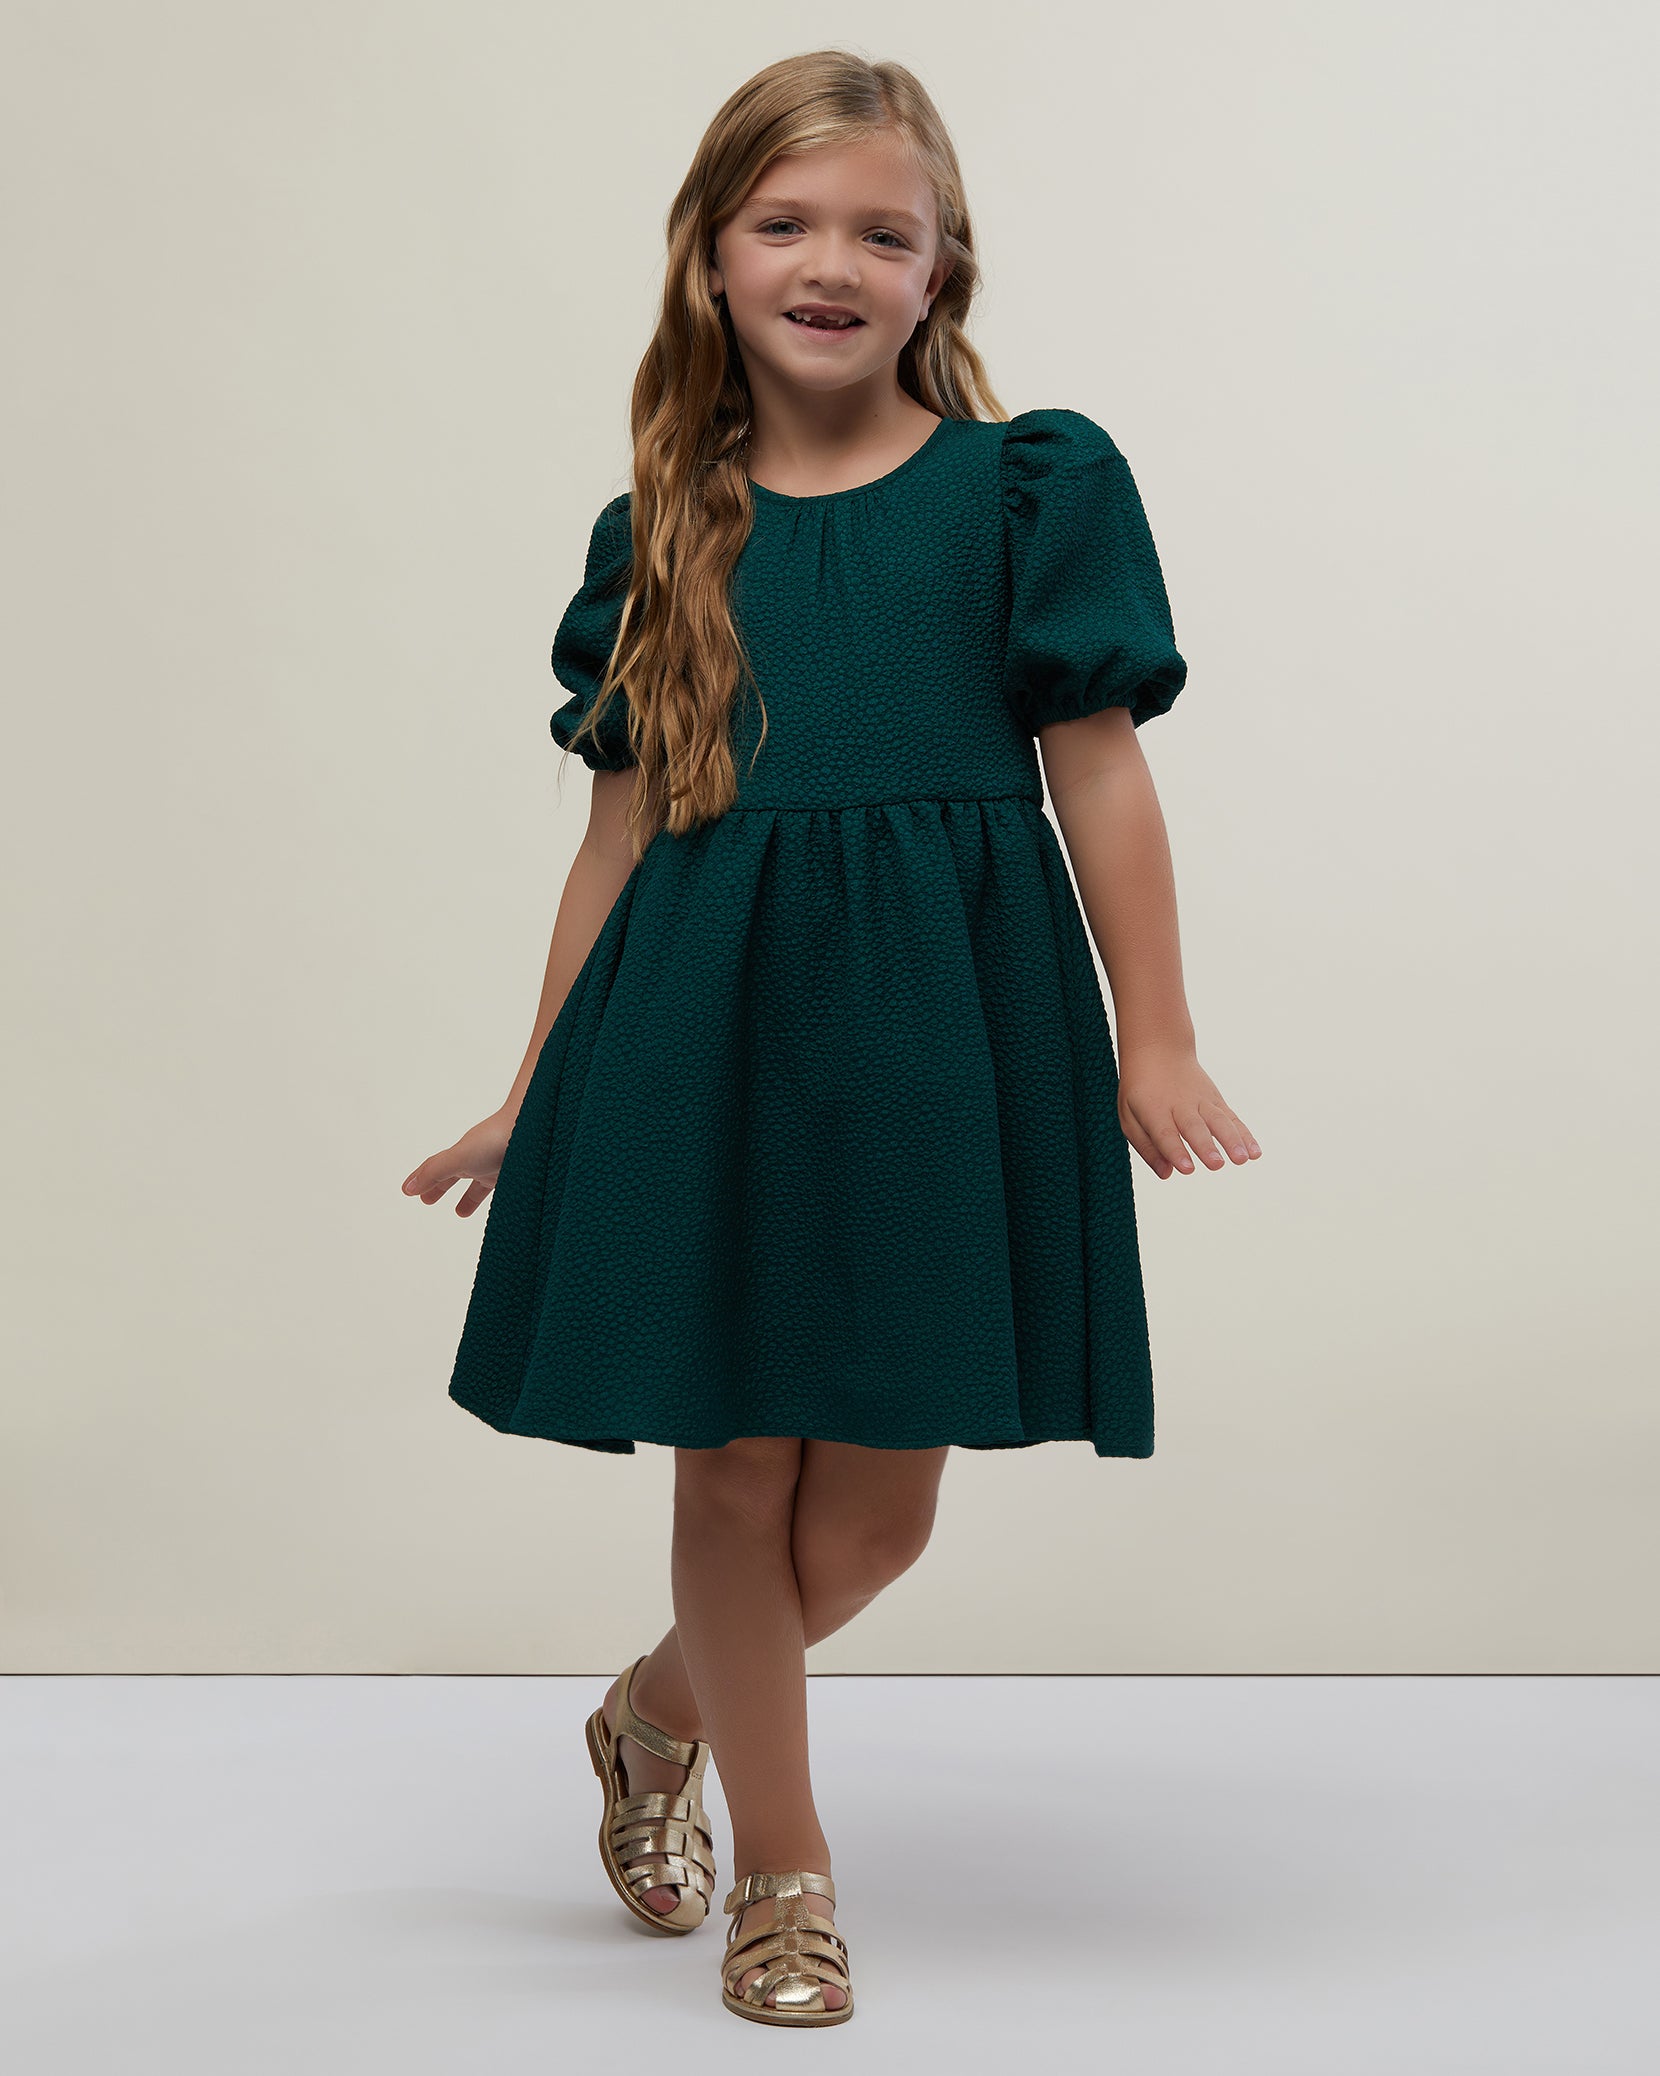 Jaquard Girl's Puff Sleeve Dress – Rachel Parcell, Inc.